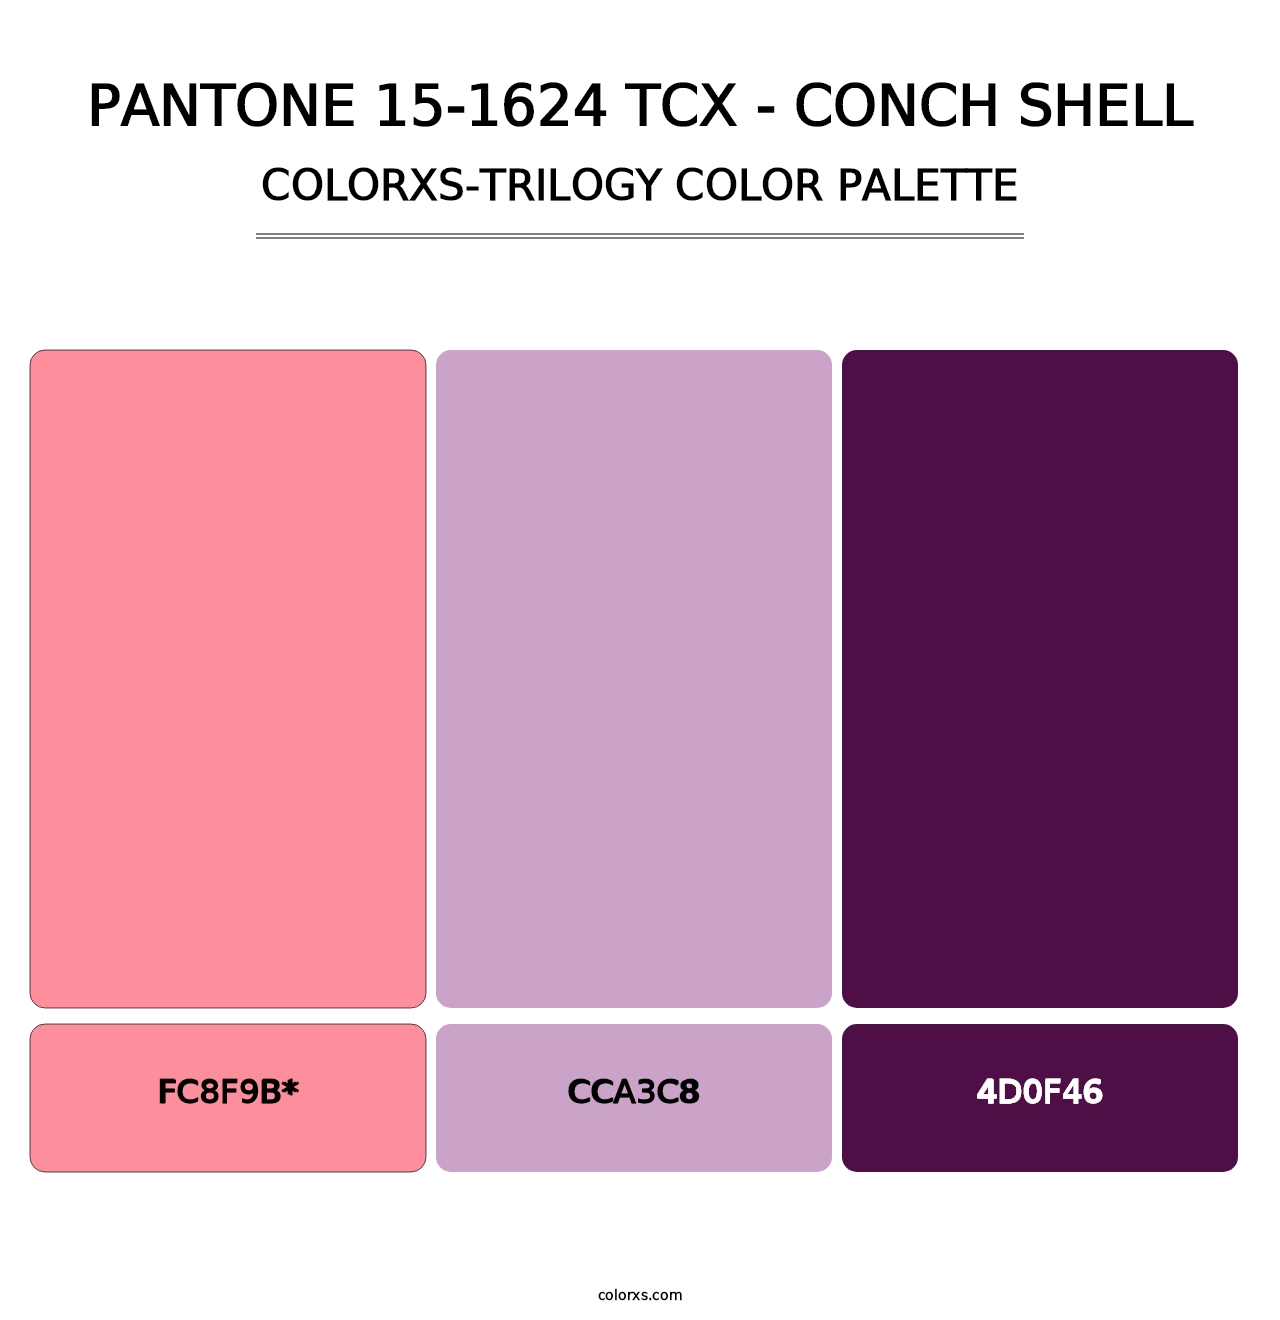 PANTONE 15-1624 TCX - Conch Shell - Colorxs Trilogy Palette